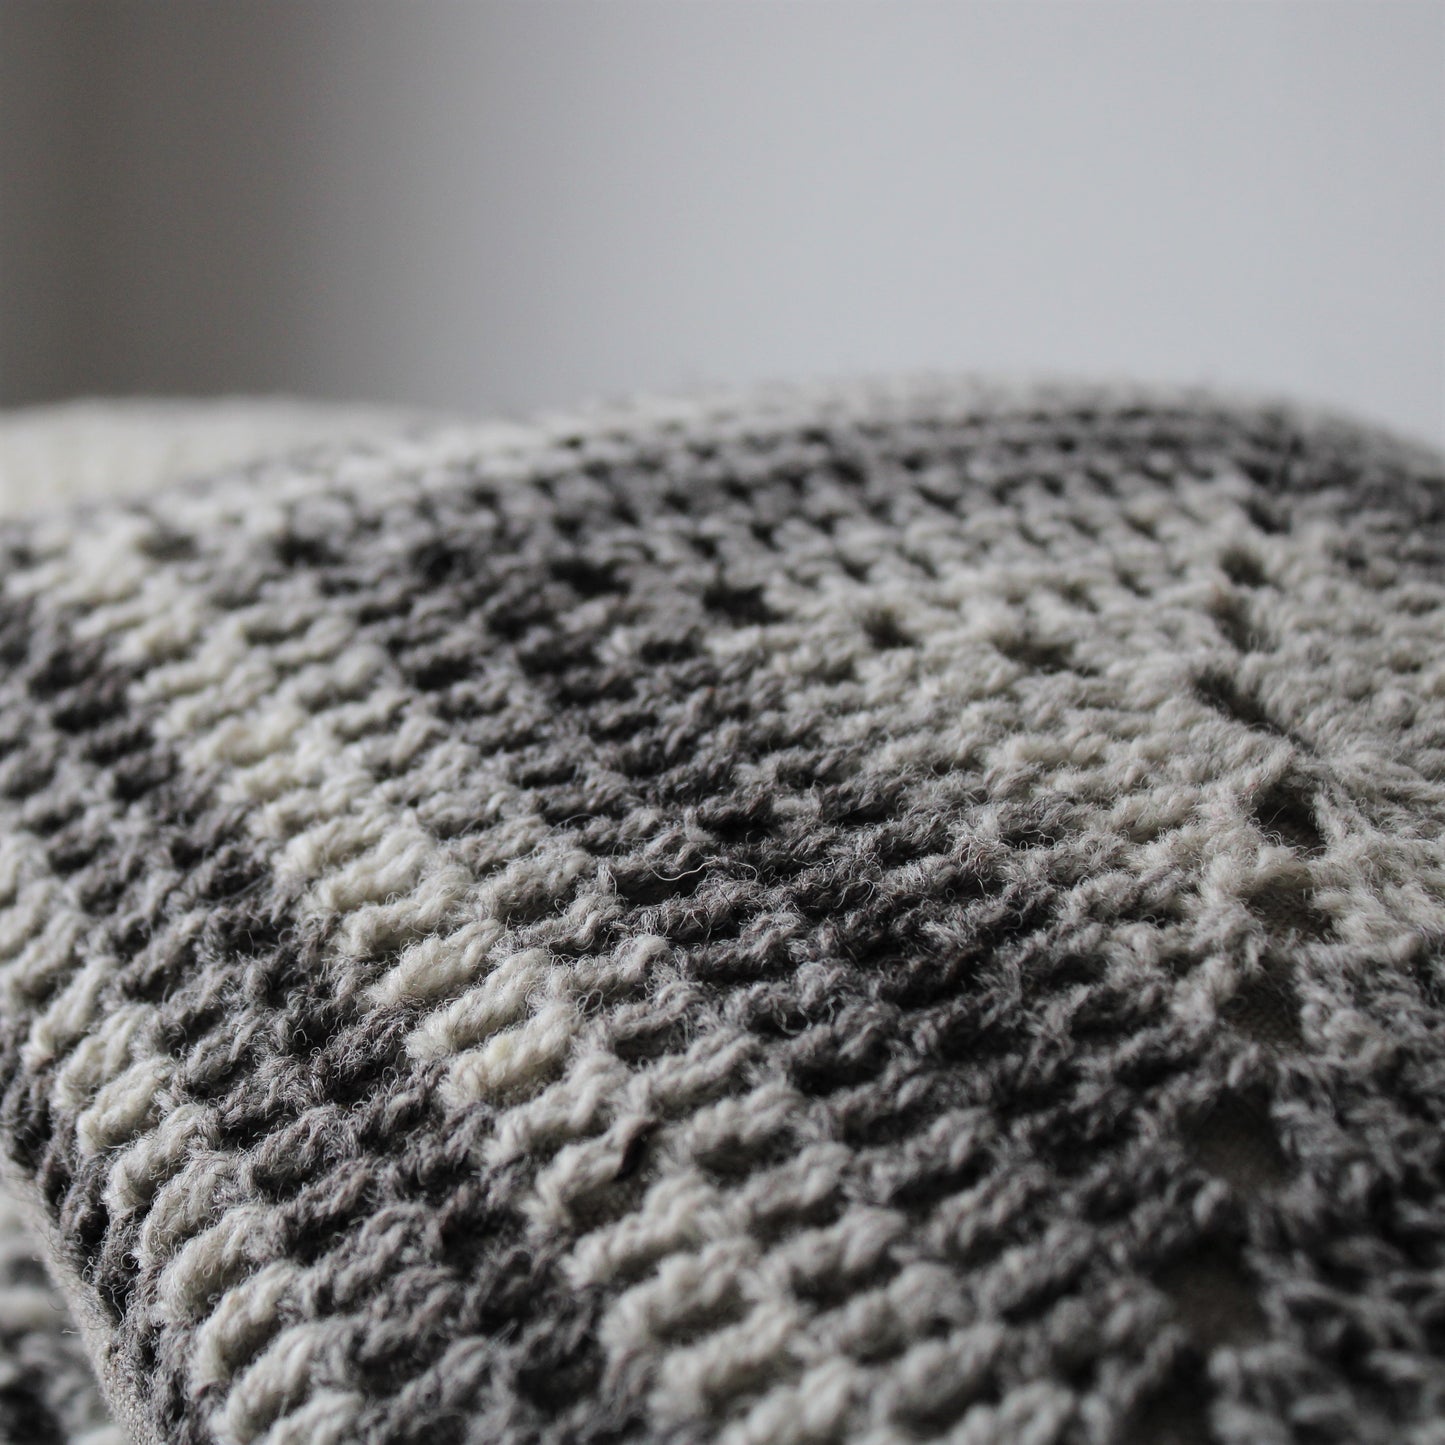 Crochet Cushion ~ Undyed Wool & Linen #2